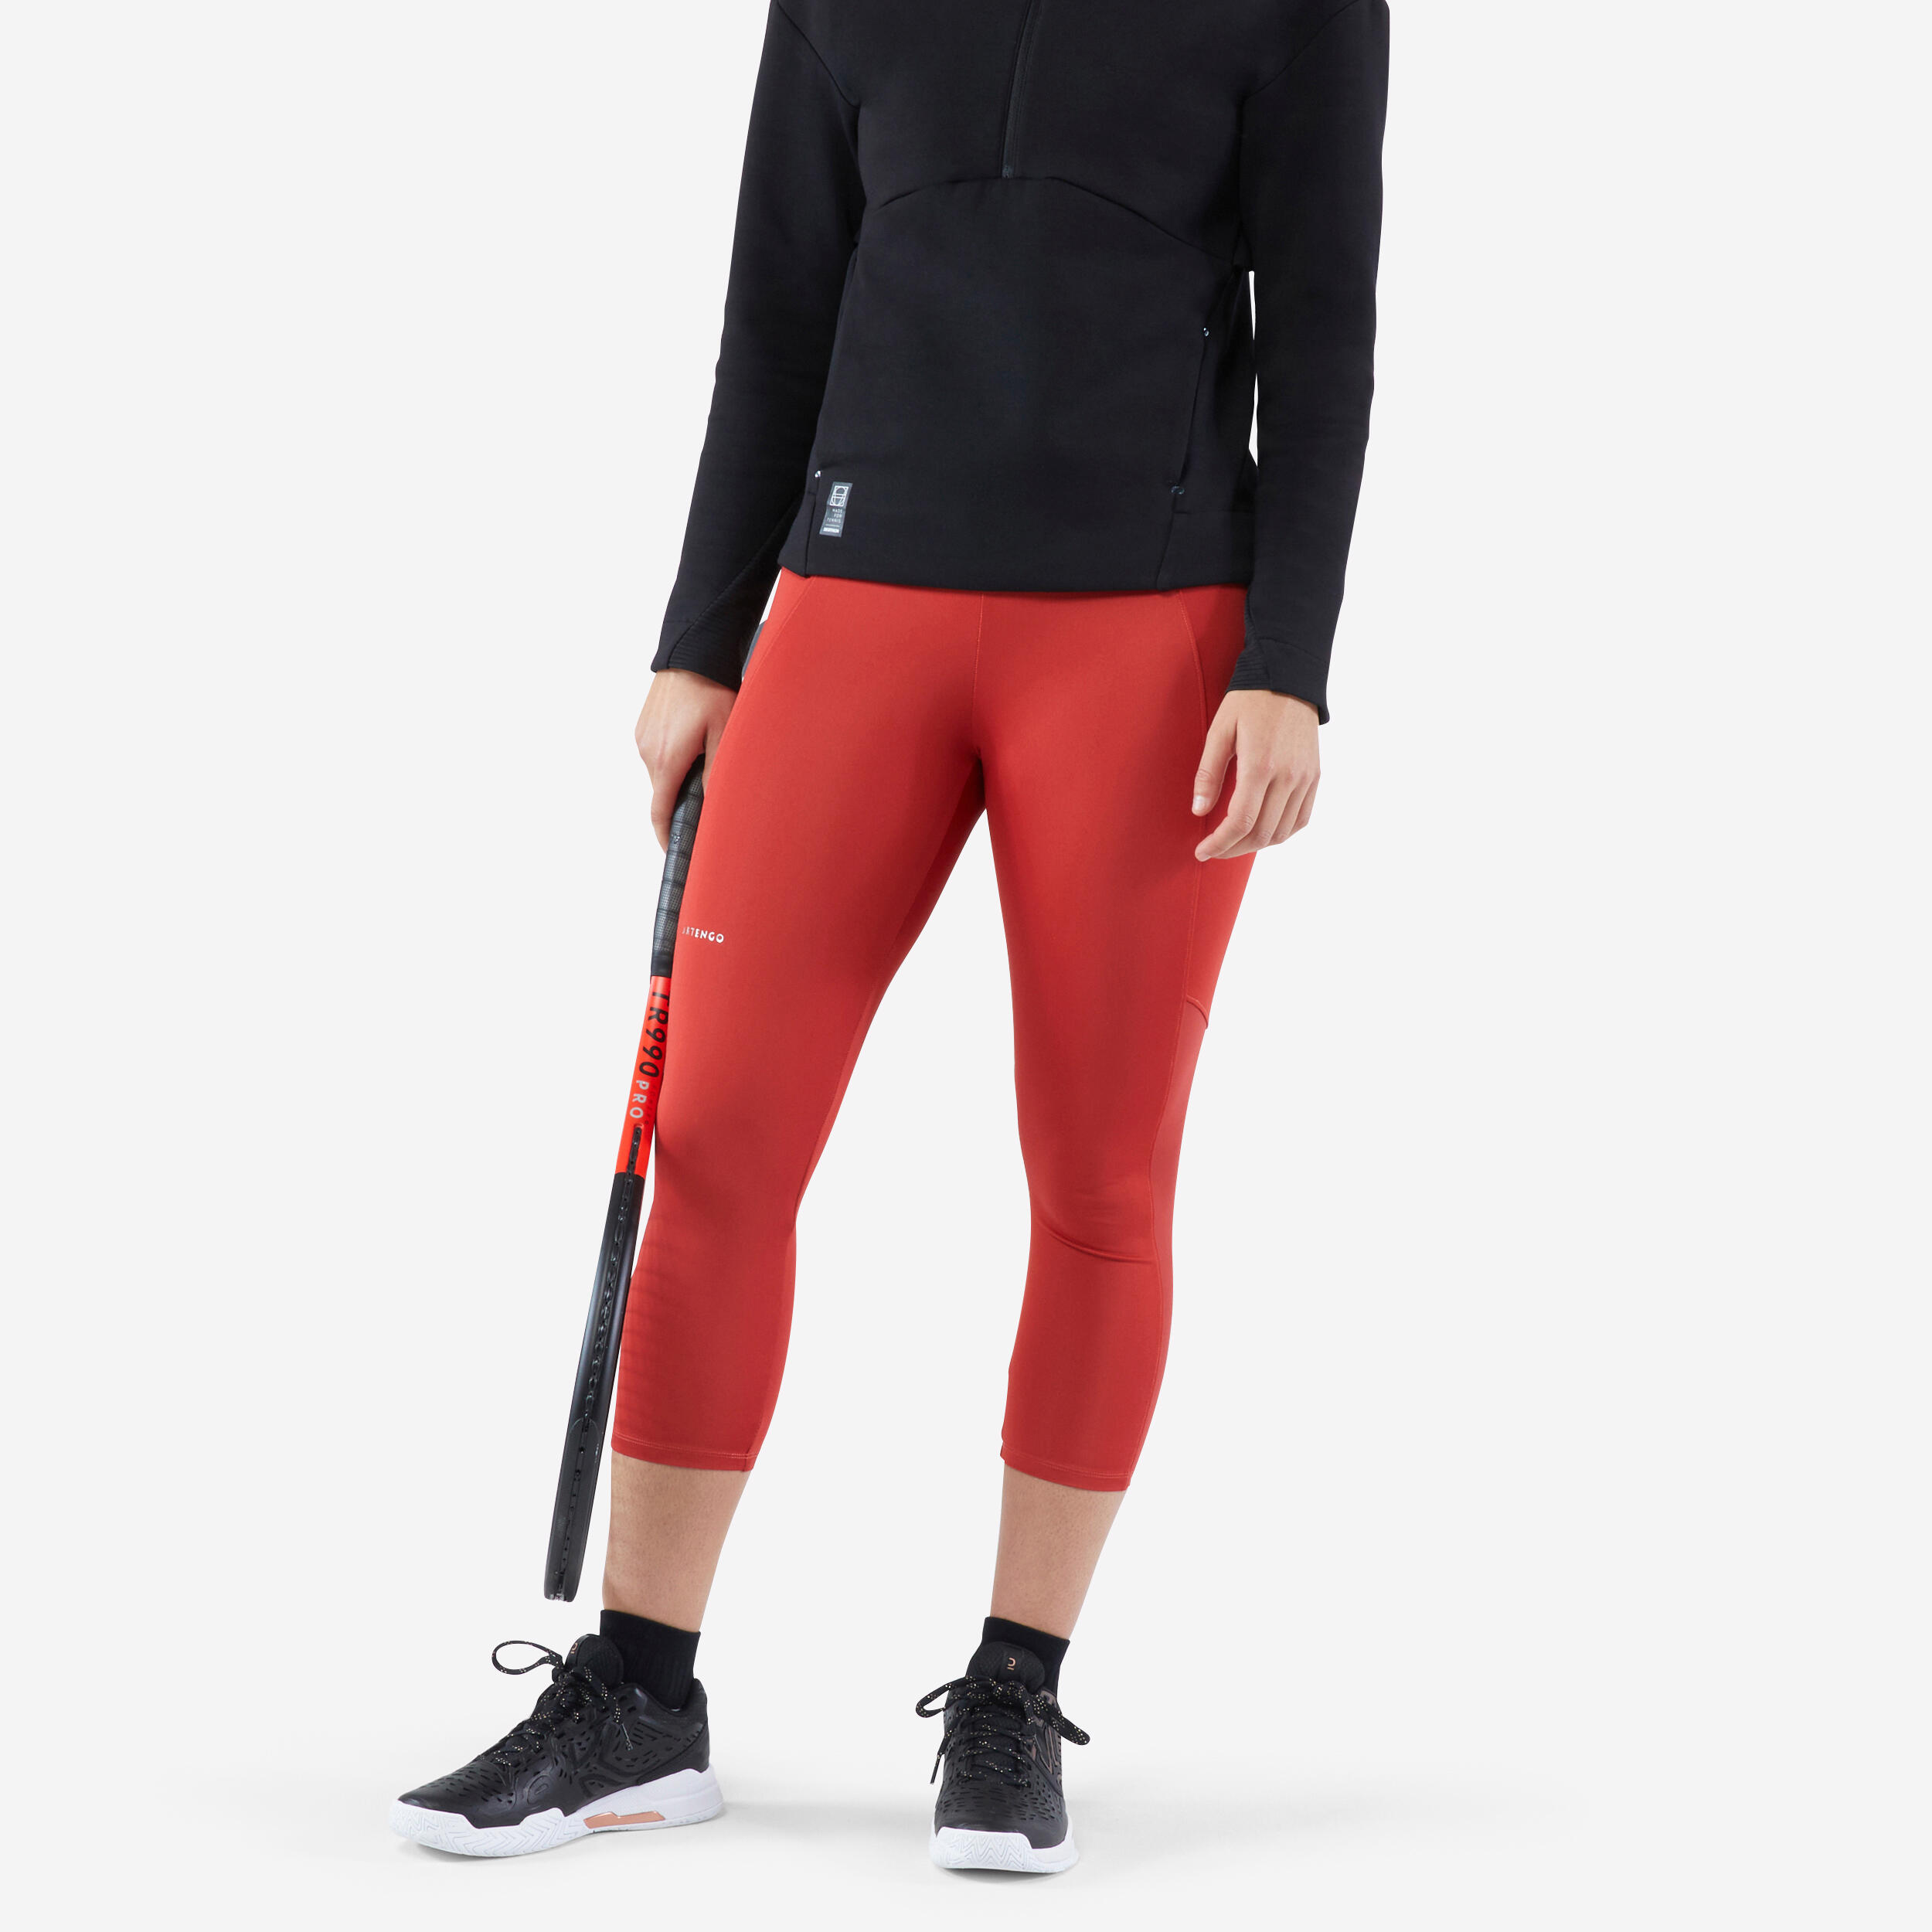 legging tennis court dry femme - corsaire dry hip ball rouge brique - artengo